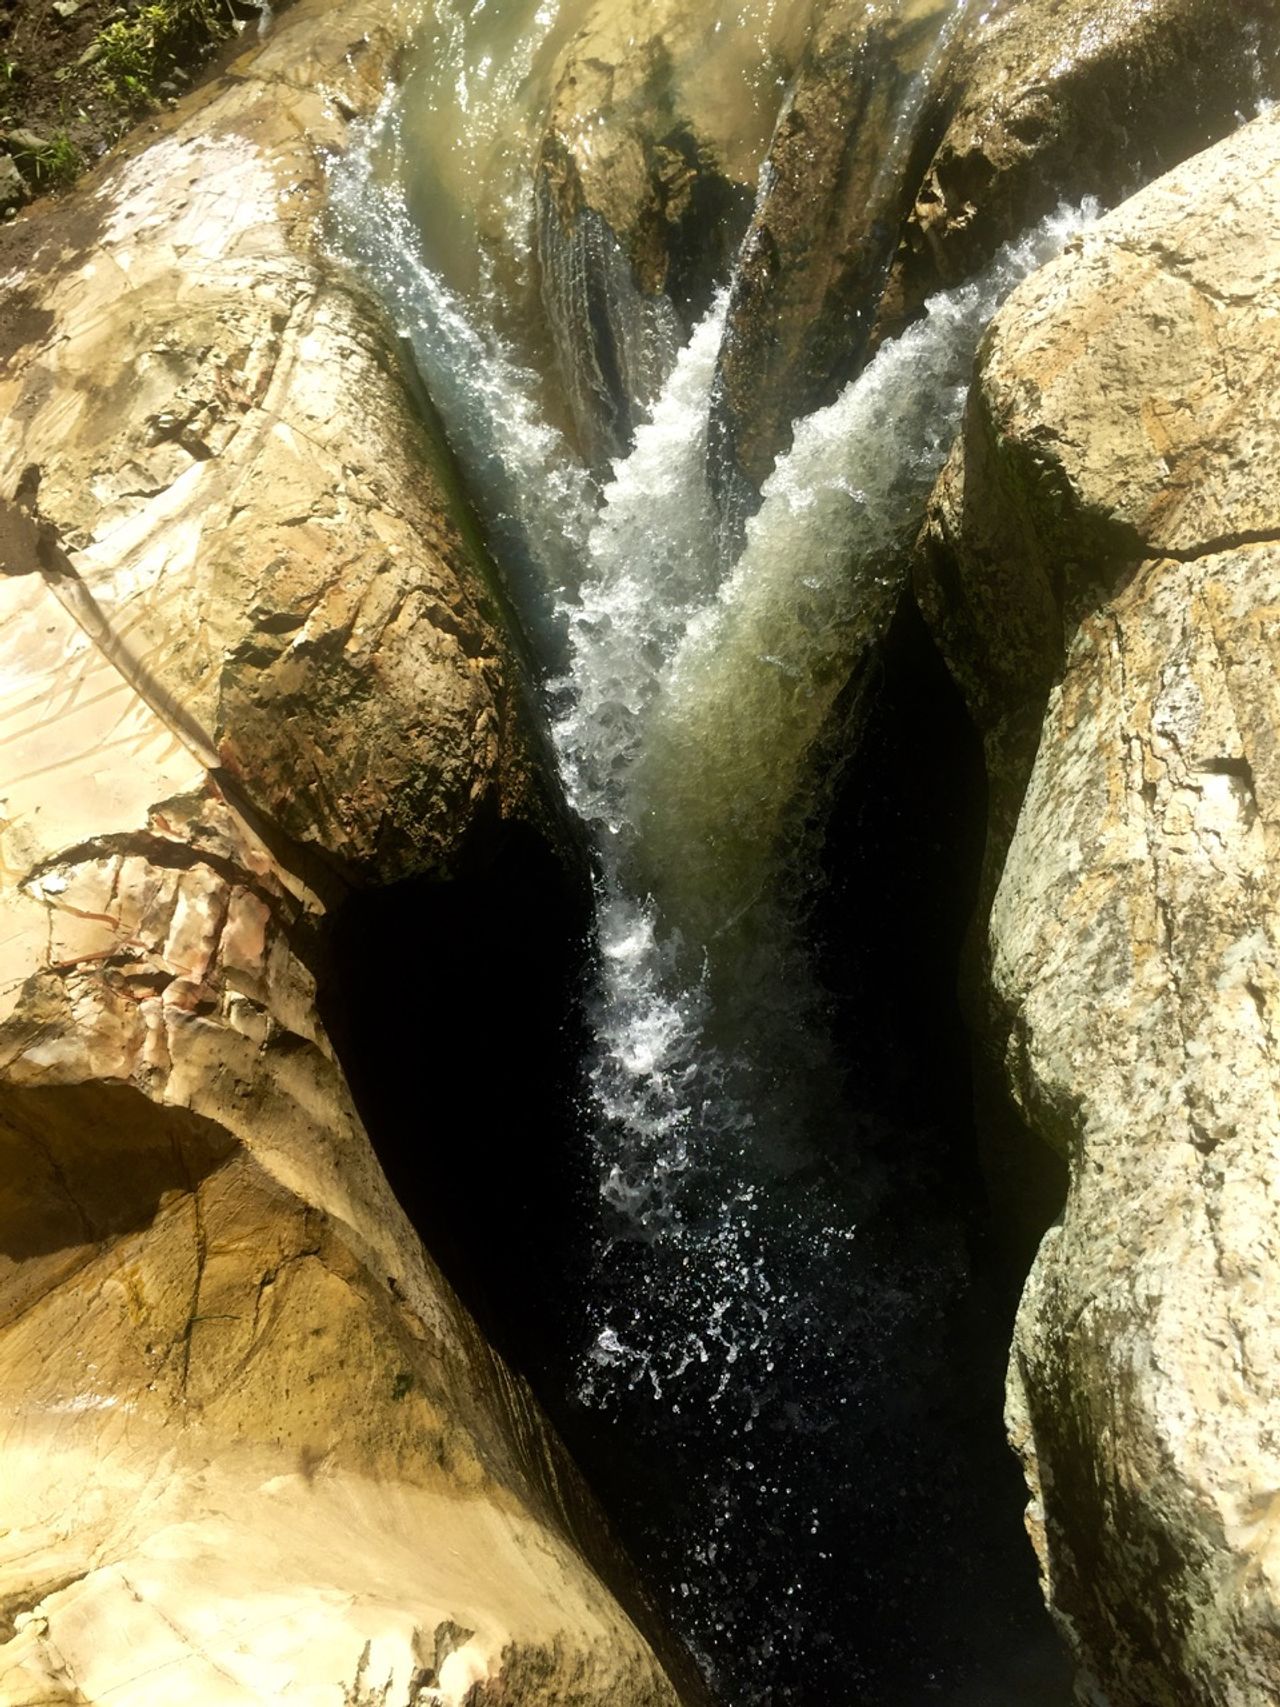 The main waterfall at Luweng Sampang.